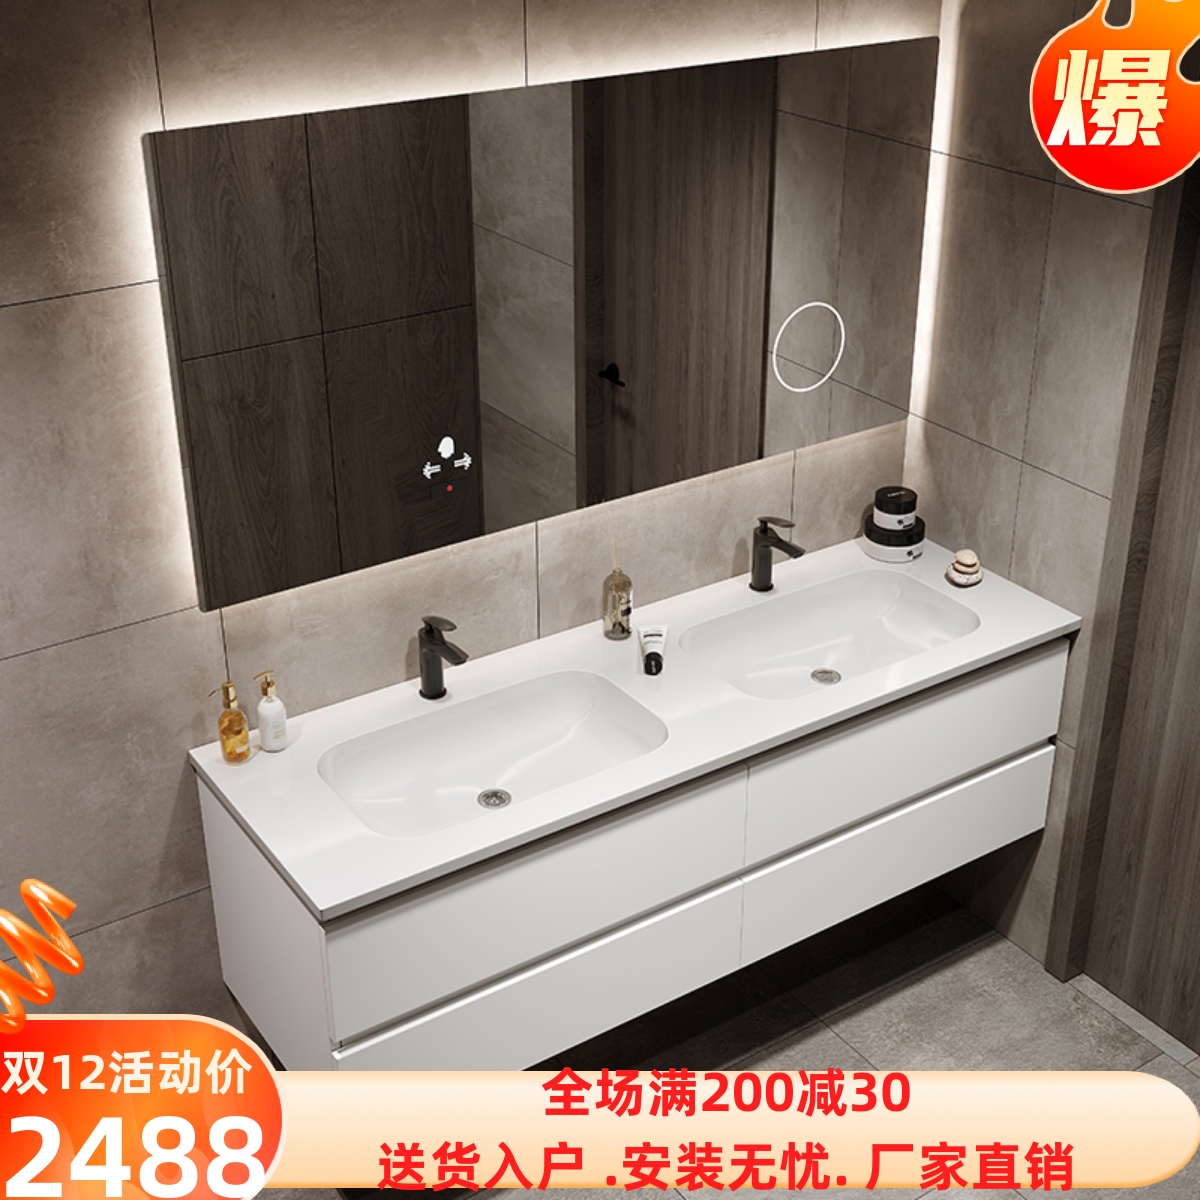 吉事多新东方系列1200一体双槽盆浴室柜GE-1703-产品价格_图片_报价_新浪家居网